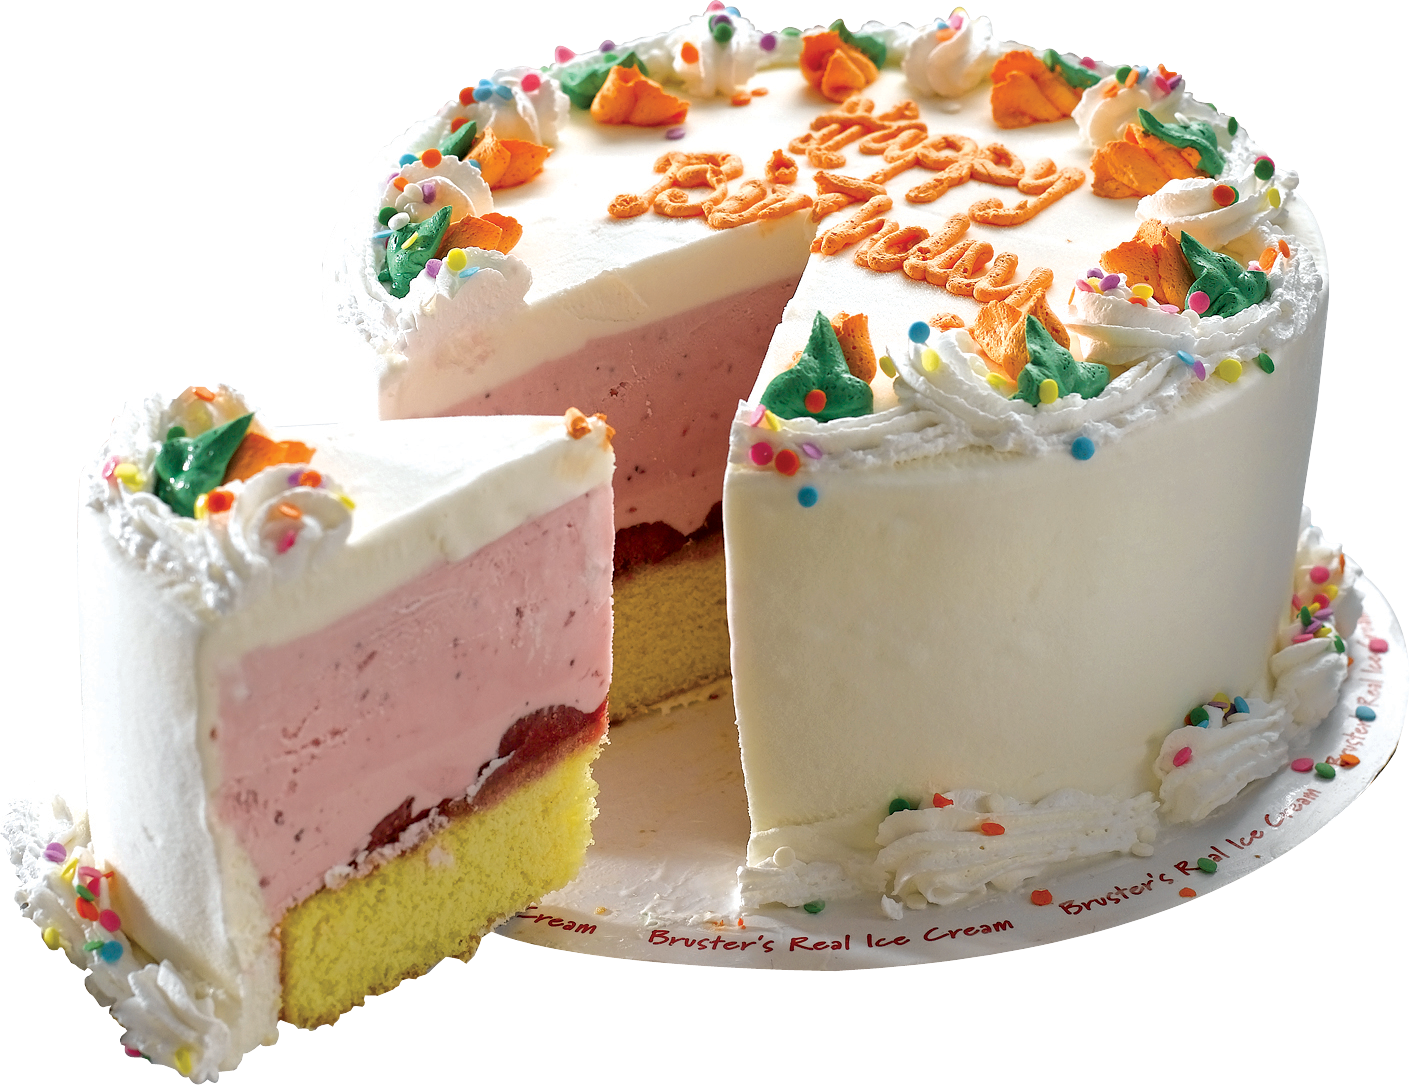 Birthday cake Wedding cake Ice cream cake - Cake PNG image png download -  2990*2766 - Free Transparent Birthday Cake png Download. - Clip Art Library